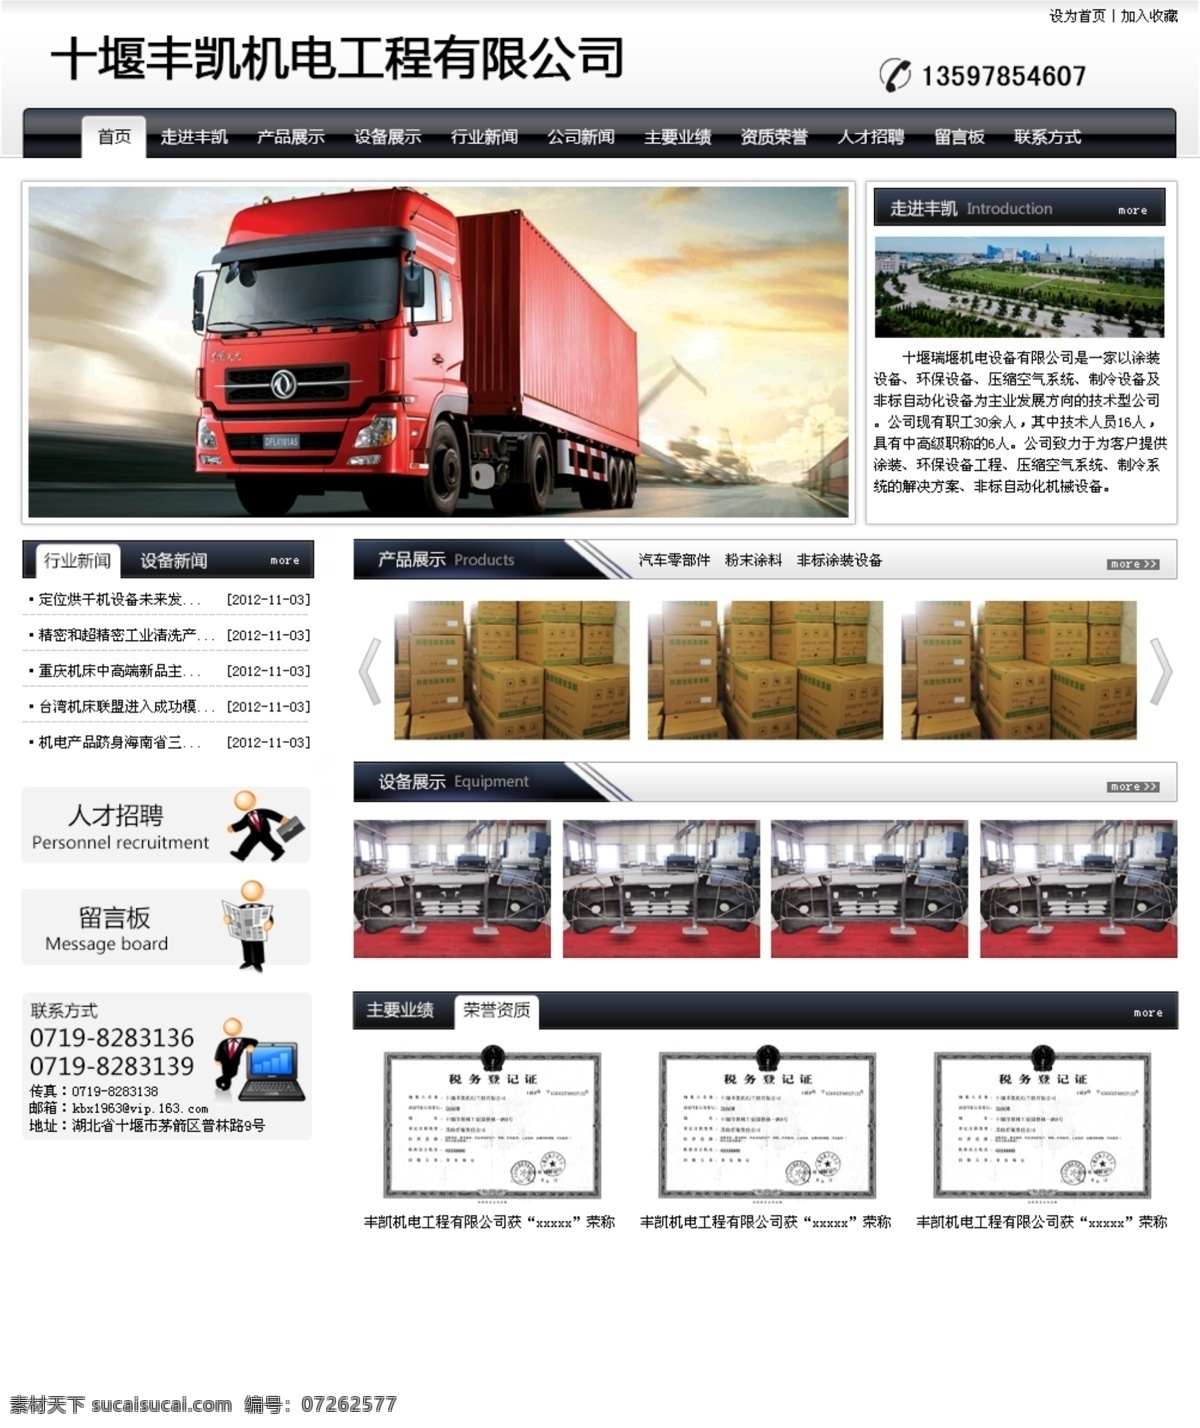 机电工程 行业 网站 环保设备 涂装设备 卡车 商务 黑色 机电工程网站 中文模板 网页模板 源文件